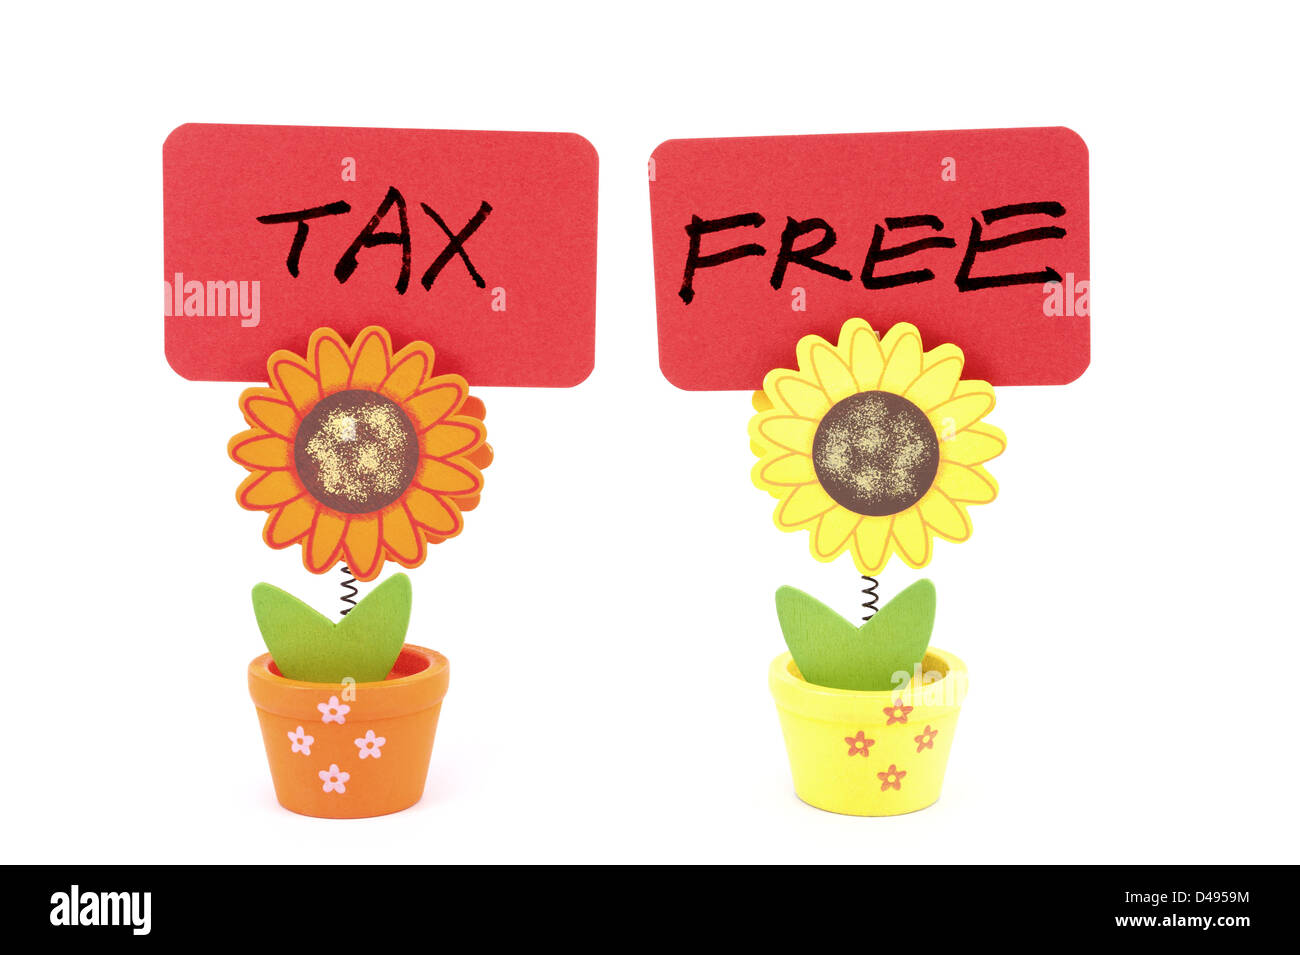 Tax Free palabras escritas sobre los clips de dos sun flower pots Foto de stock